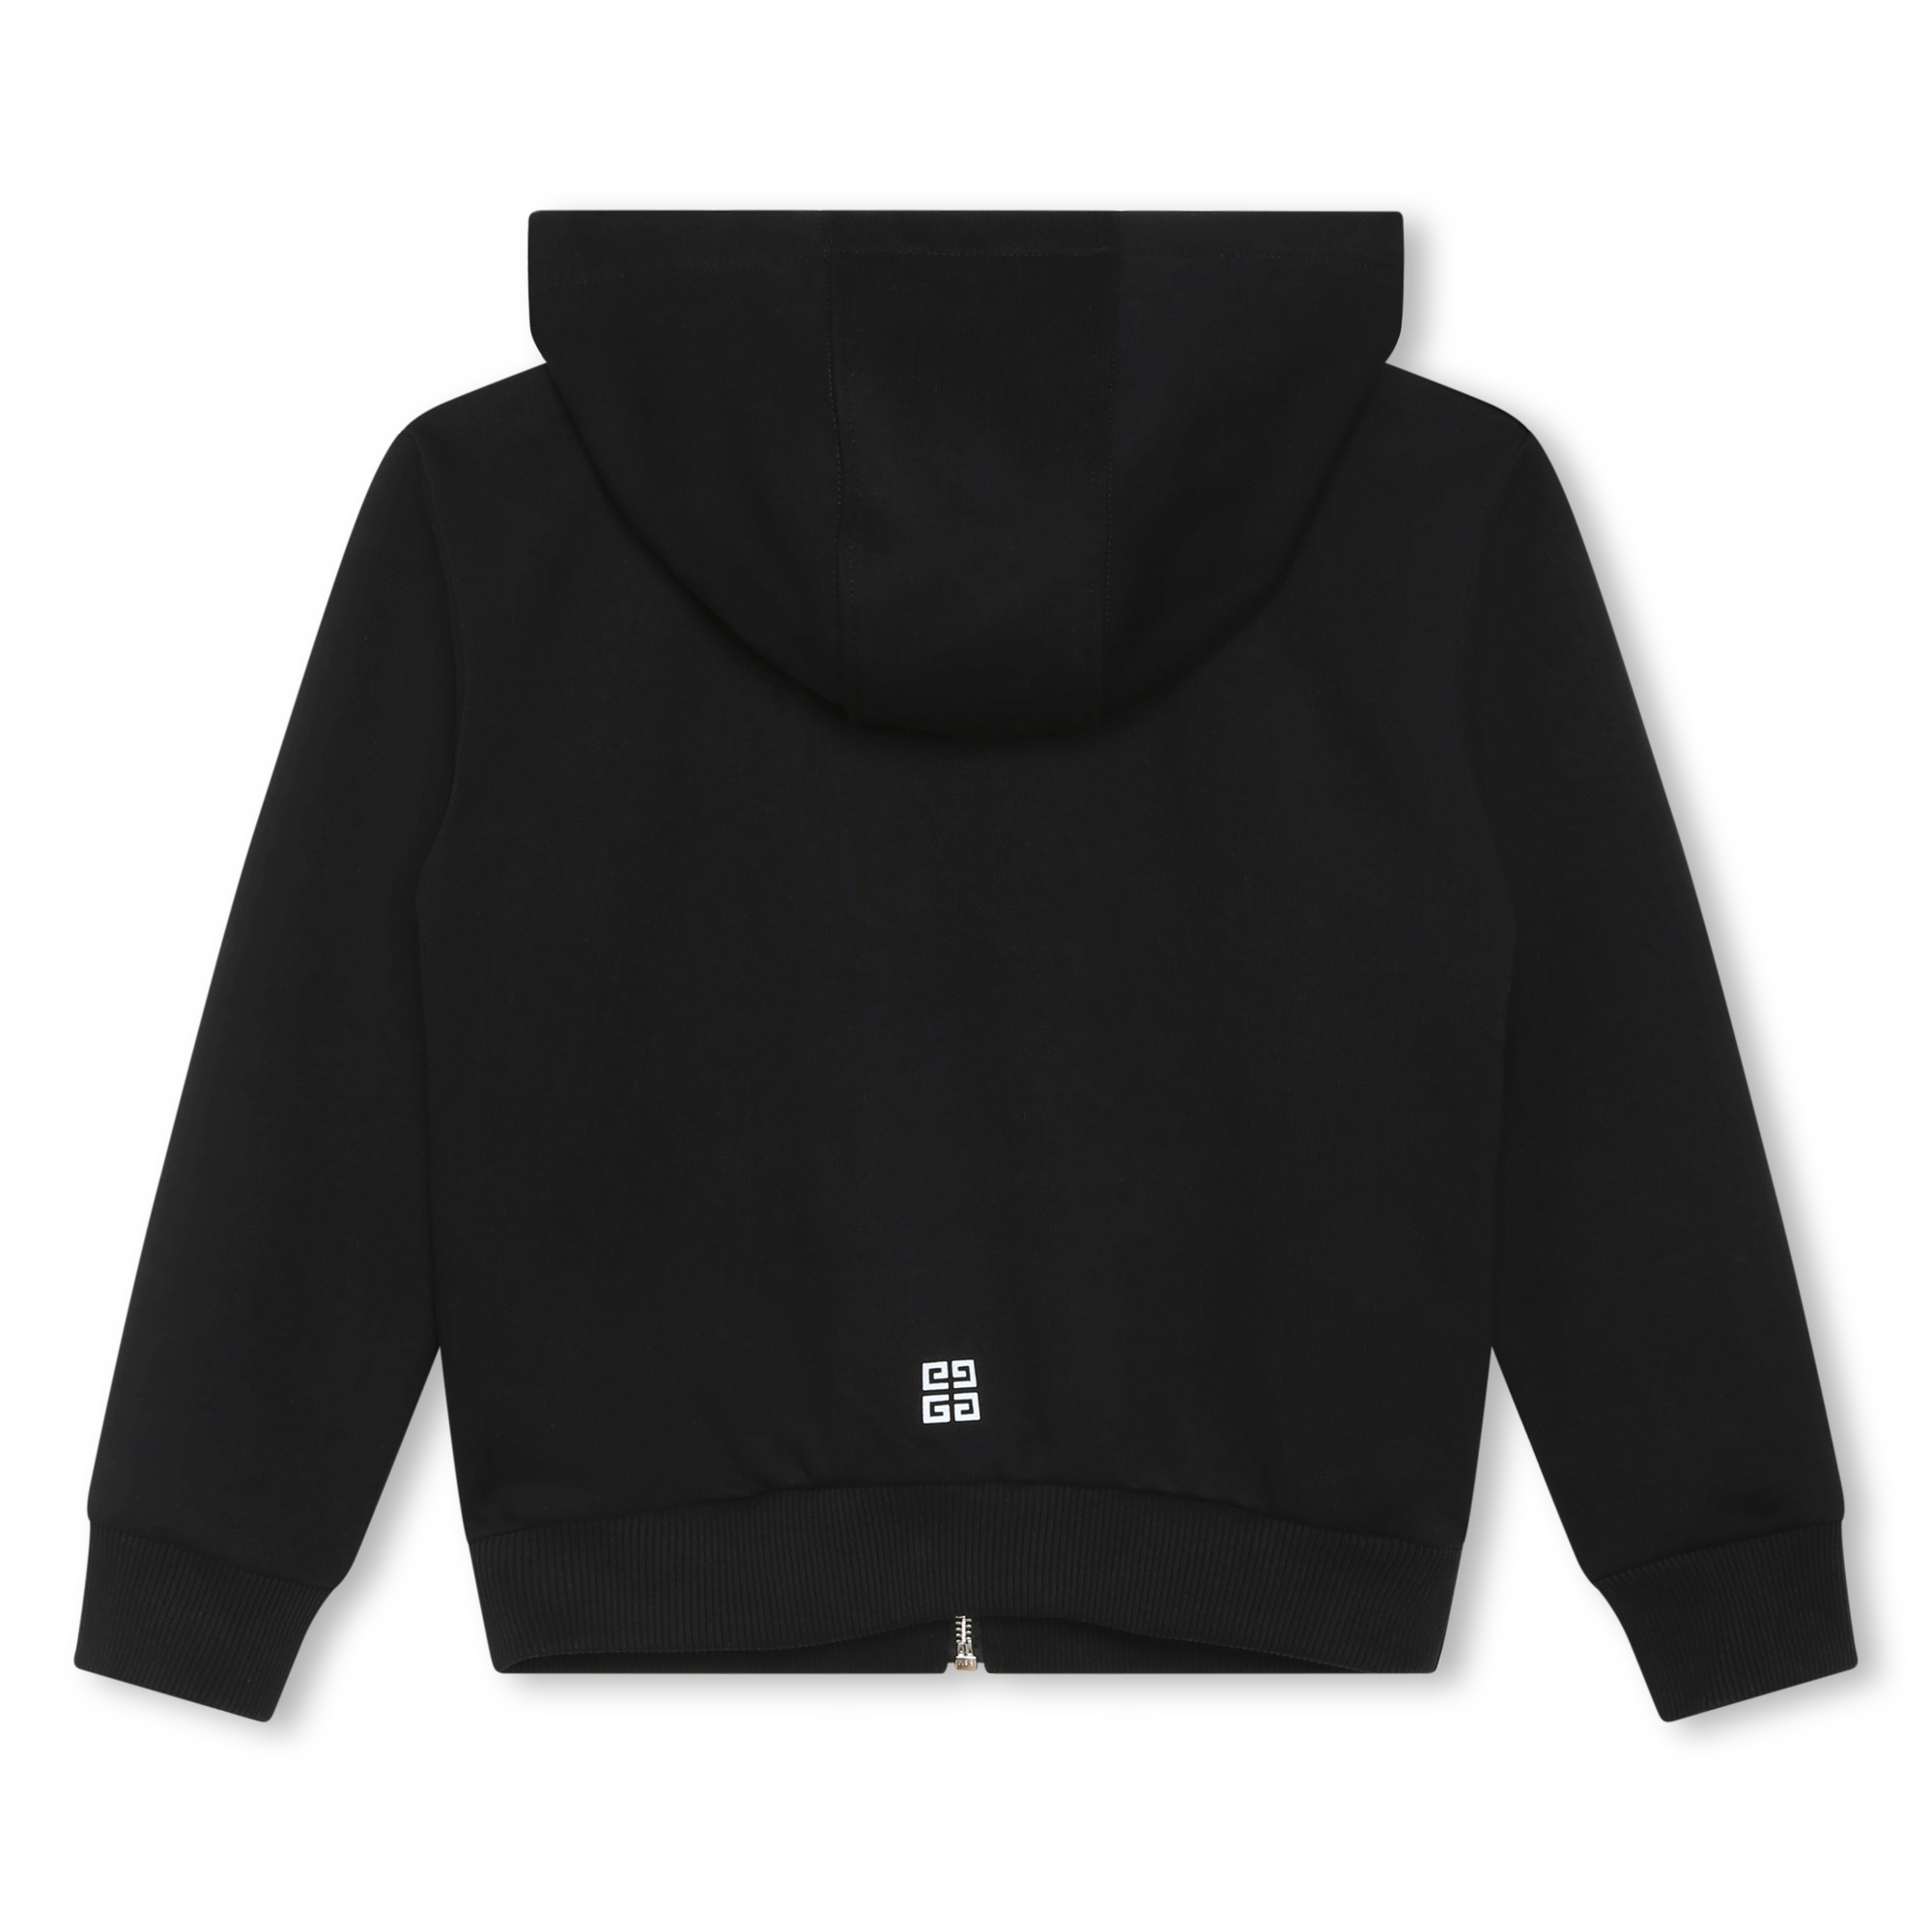 Hooded fleece sweatshirt GIVENCHY for GIRL